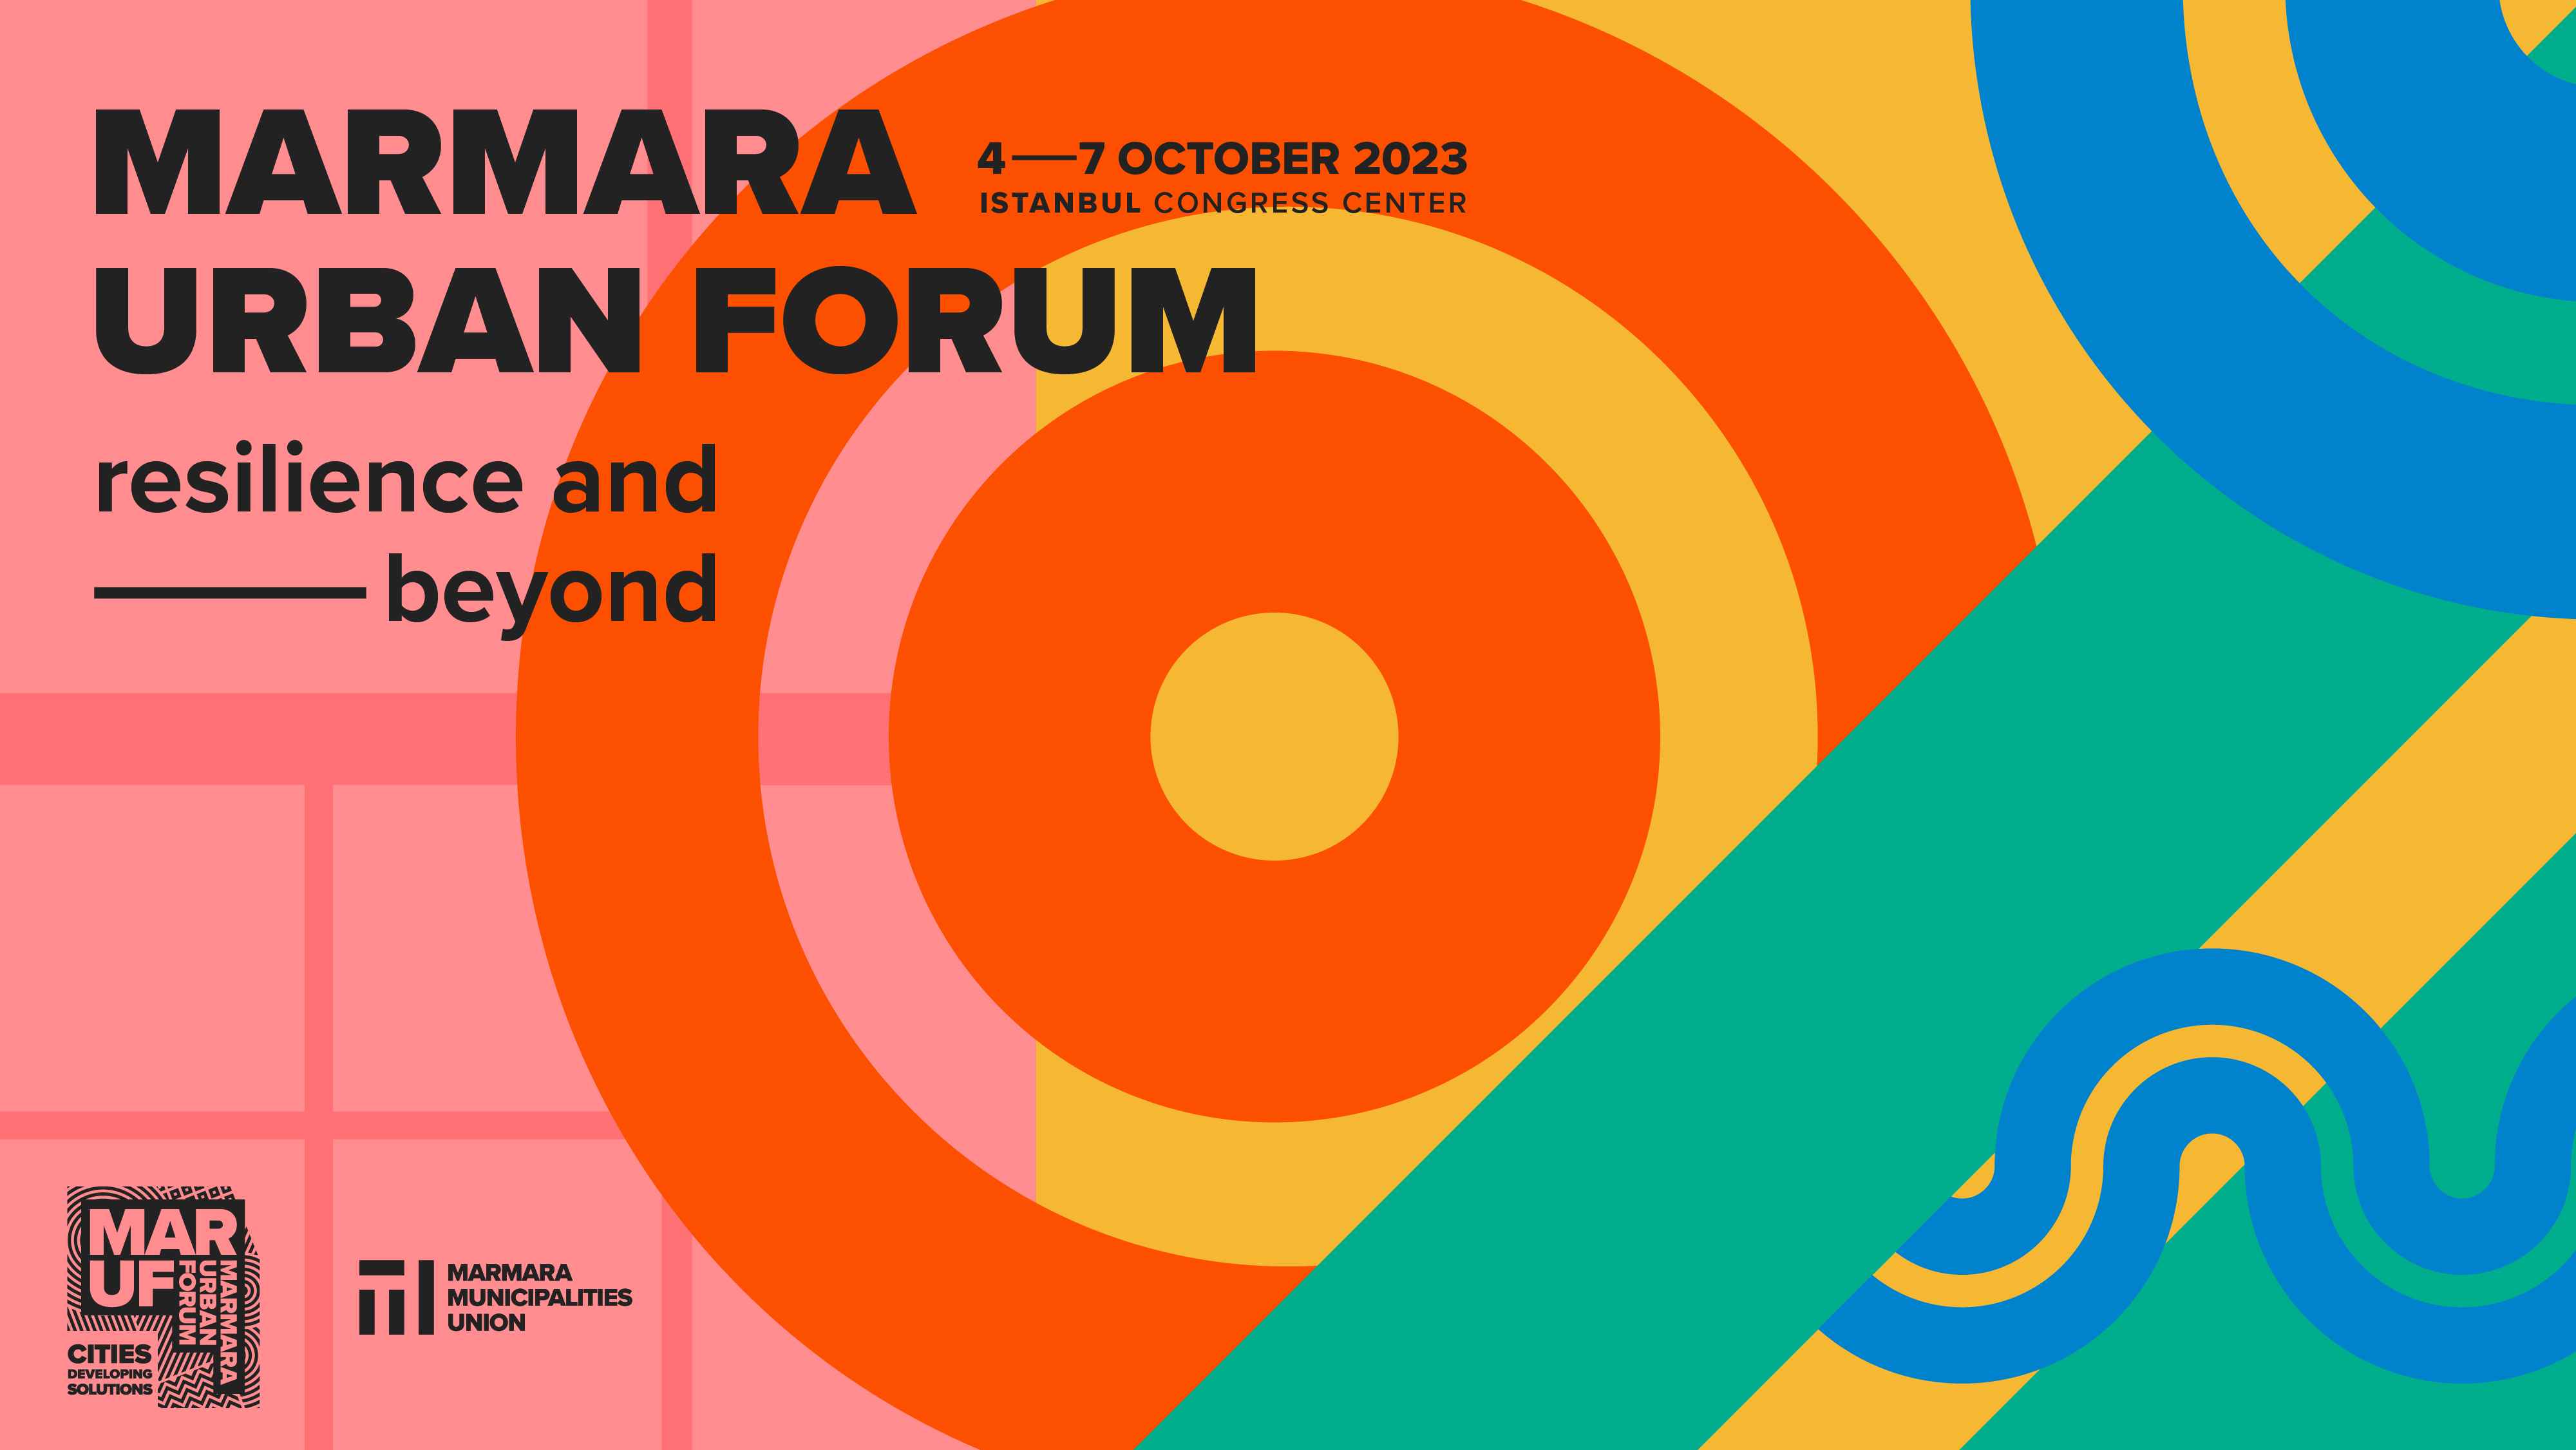 Merken Sie sich den Termin für das Marmara Urban Forum & vor und treffen Sie uns in Istanbul!